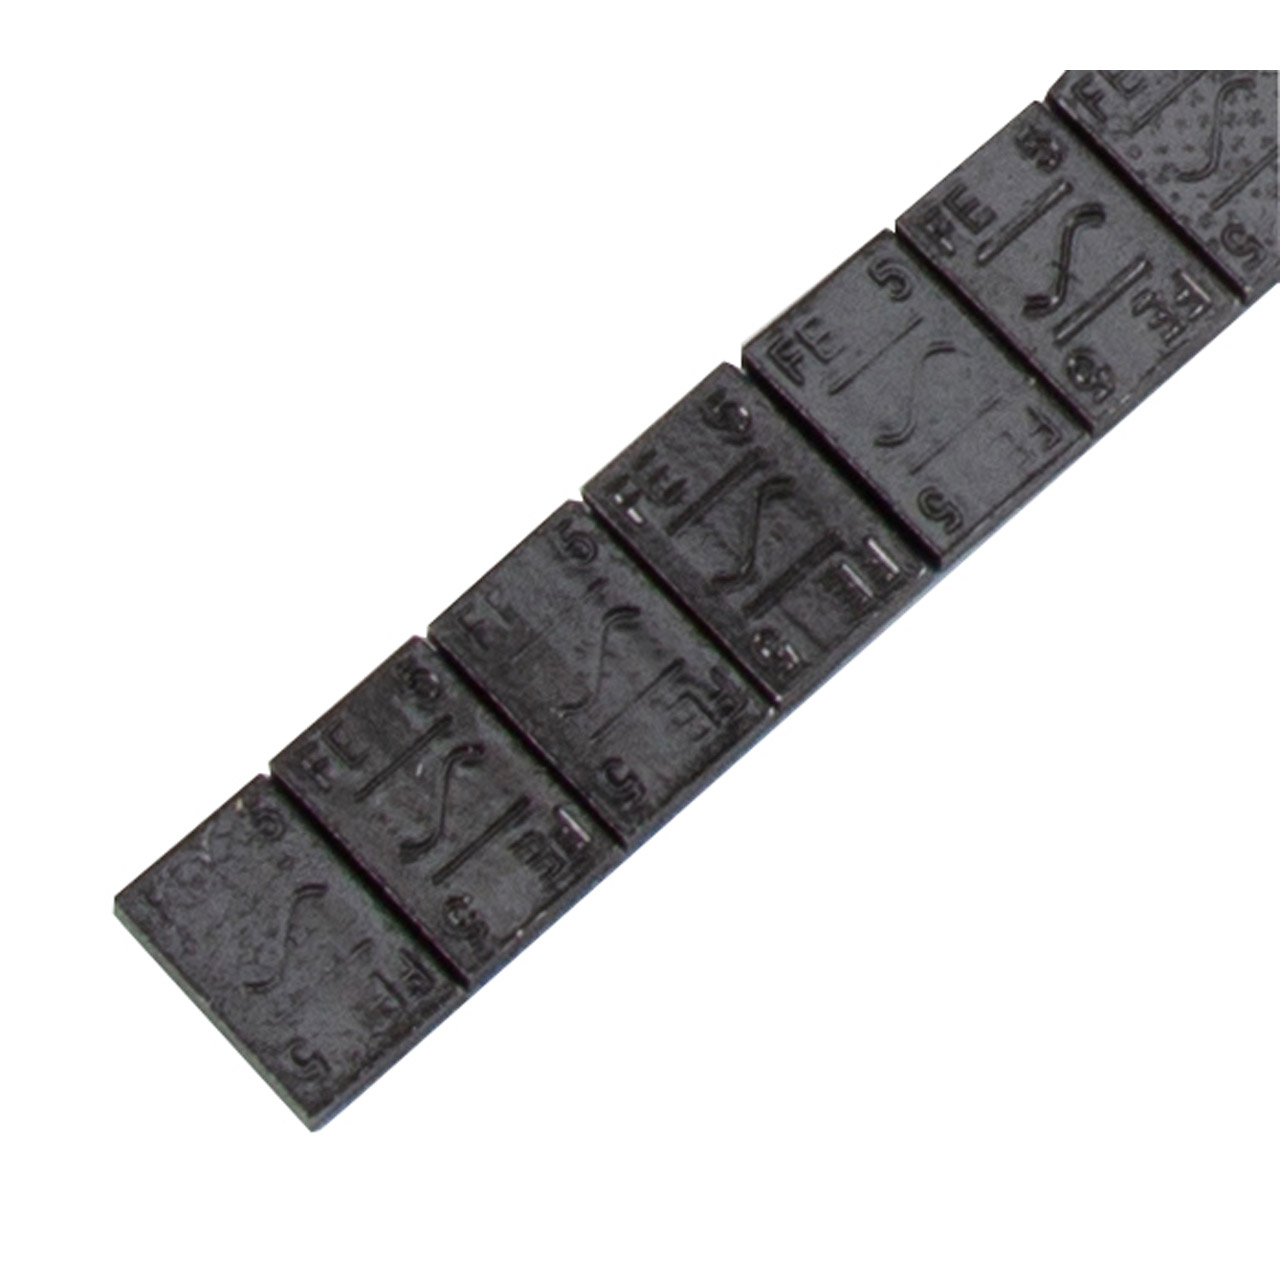 HOFMANN Auswuchtgewichte Klebegewichte SCHWARZ-STAHL 3,7mm 1000 Stück x 5g